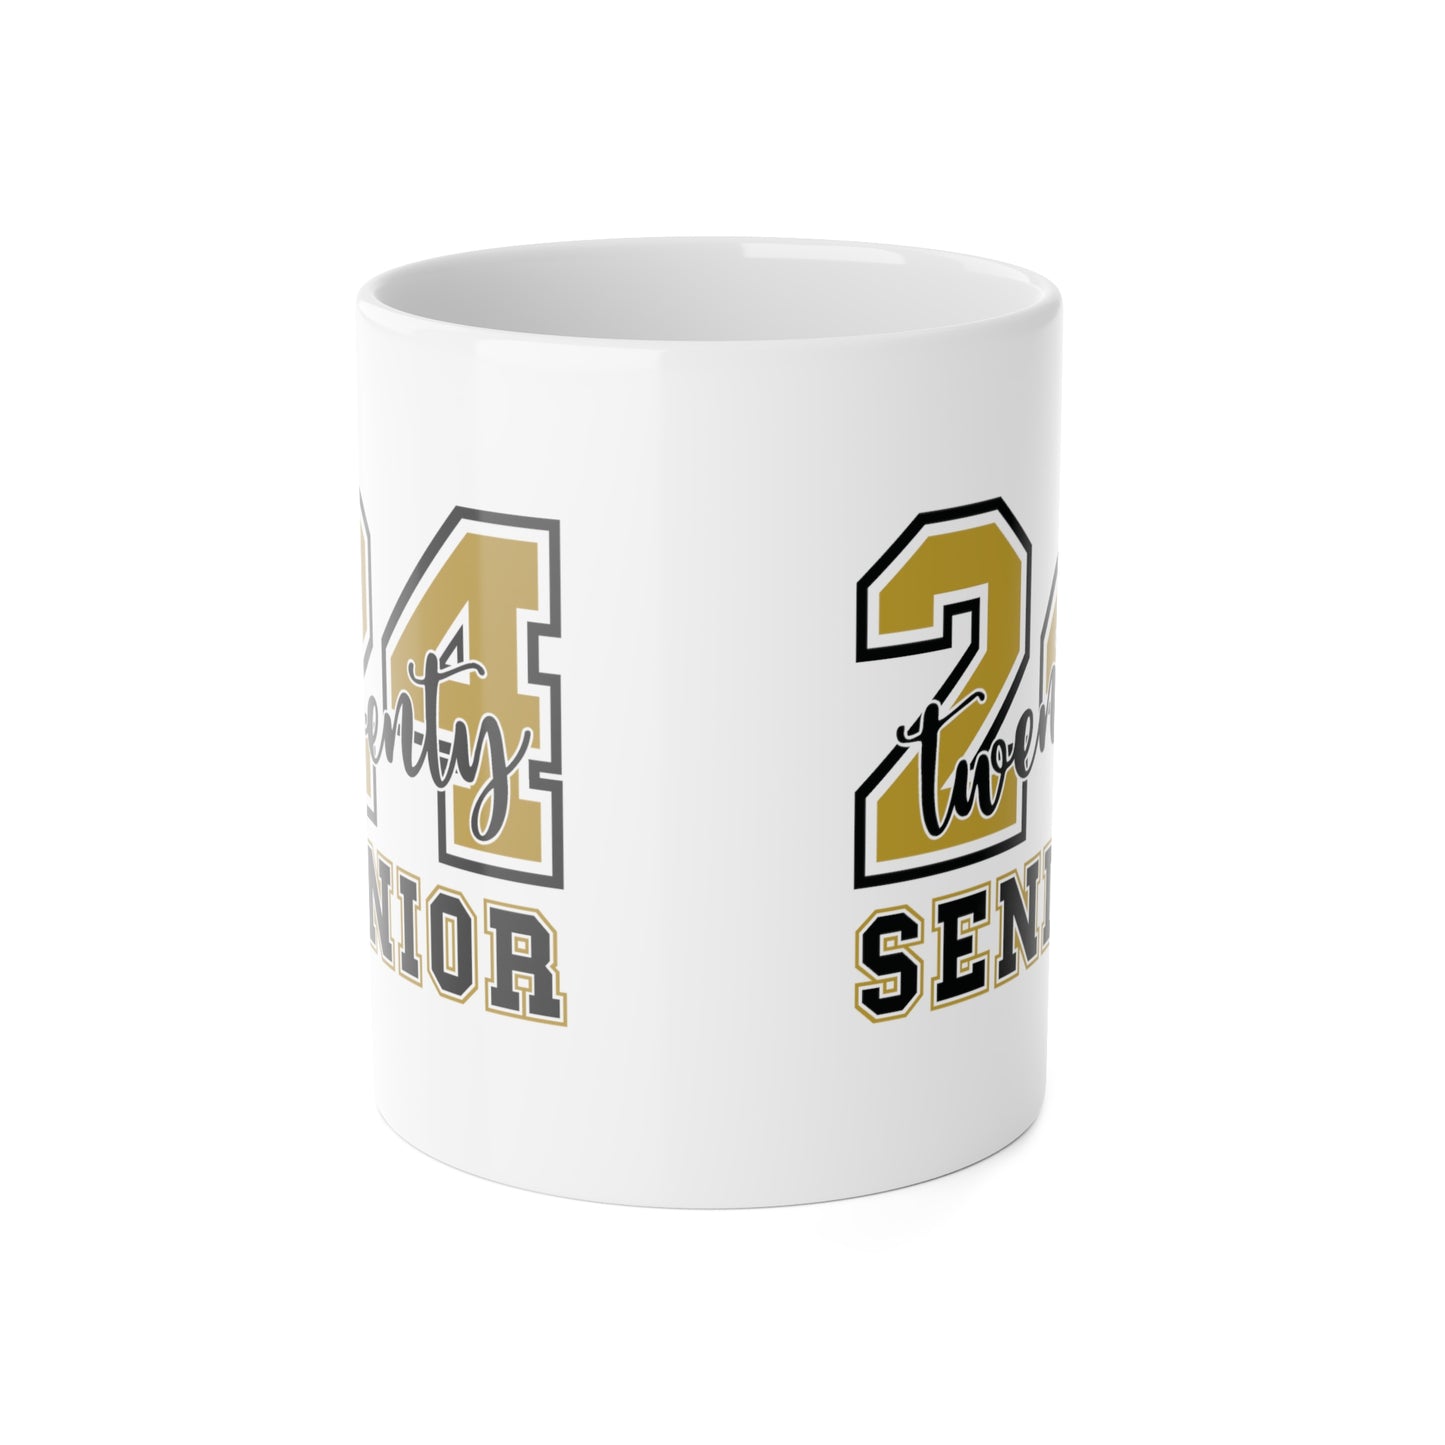 Twenty 24 Senior Ceramic Mug, 11oz